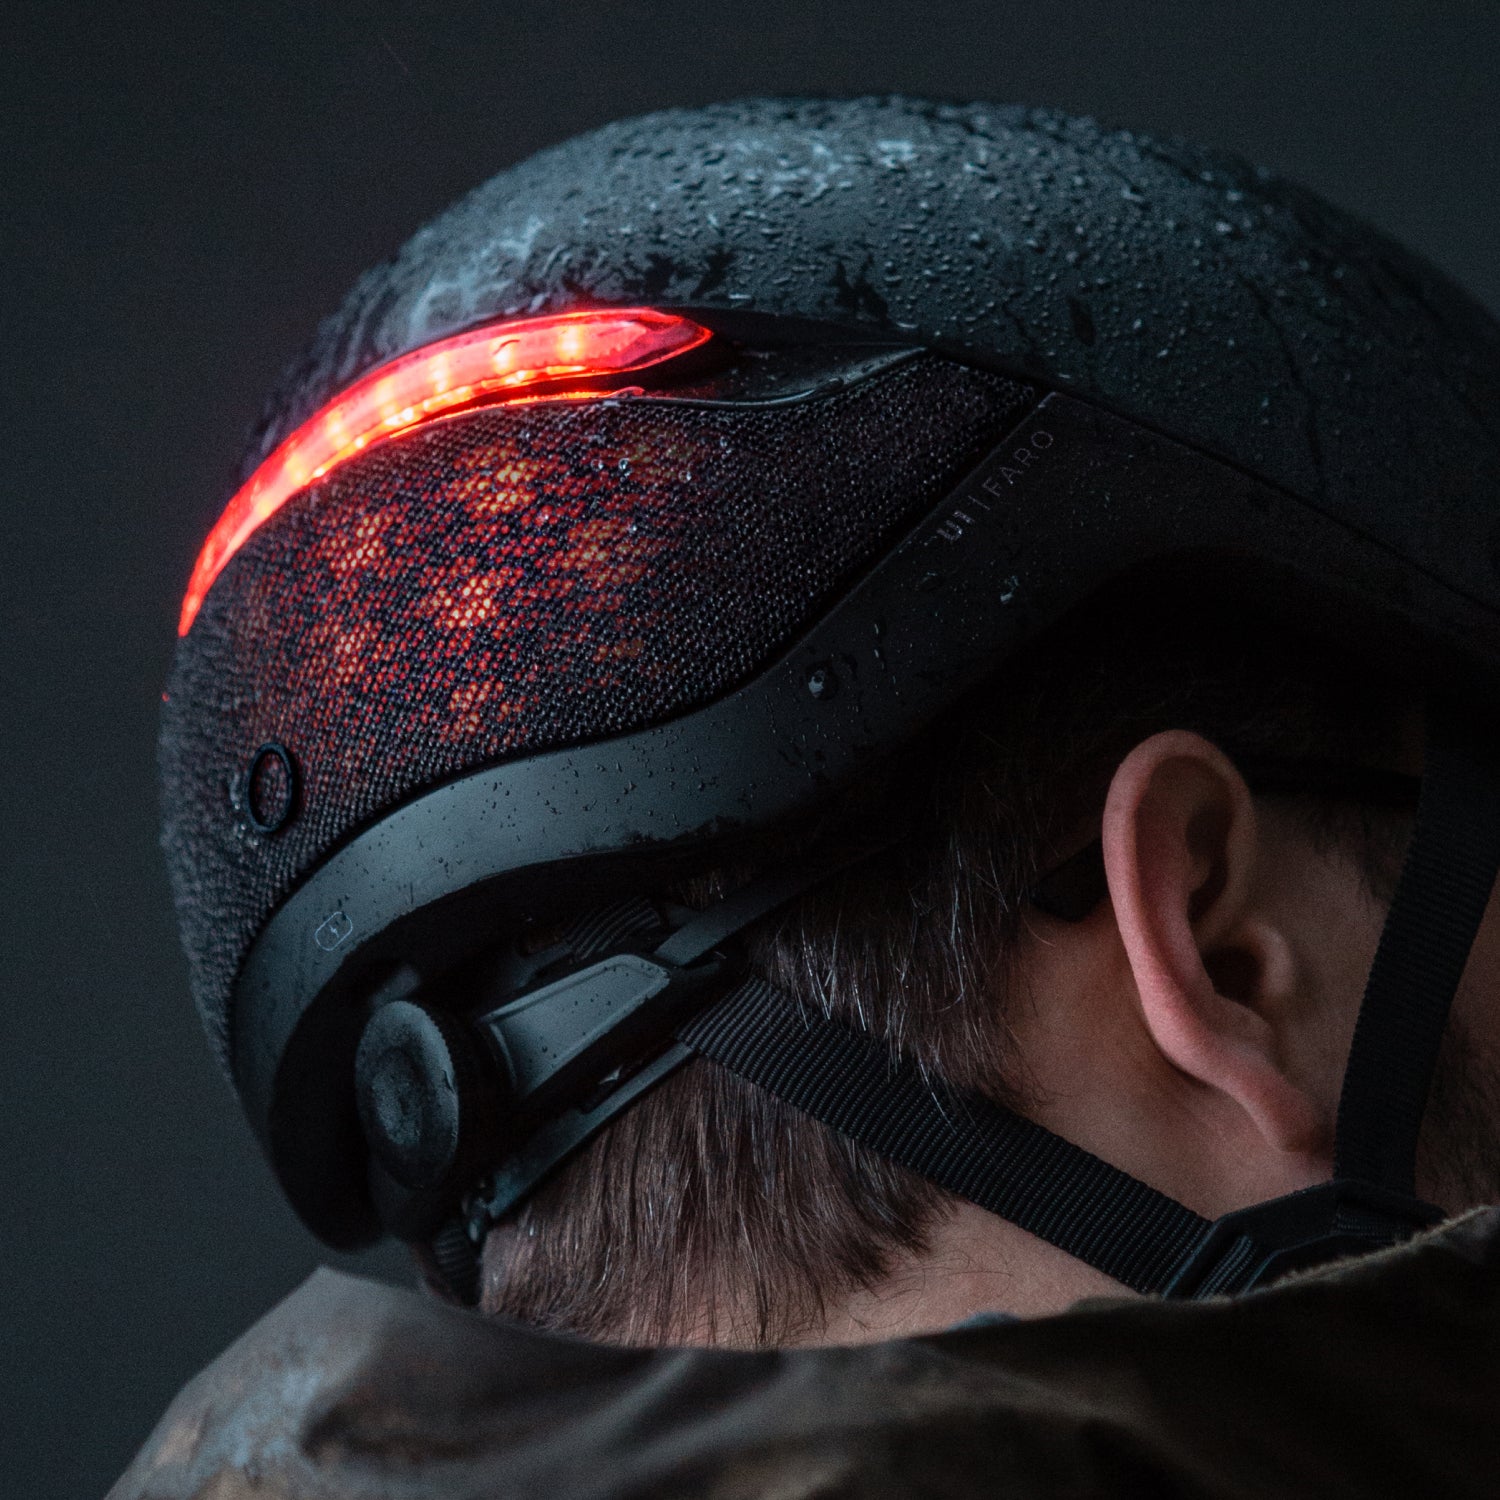 FARO smart helmet with lights on +500 lumens